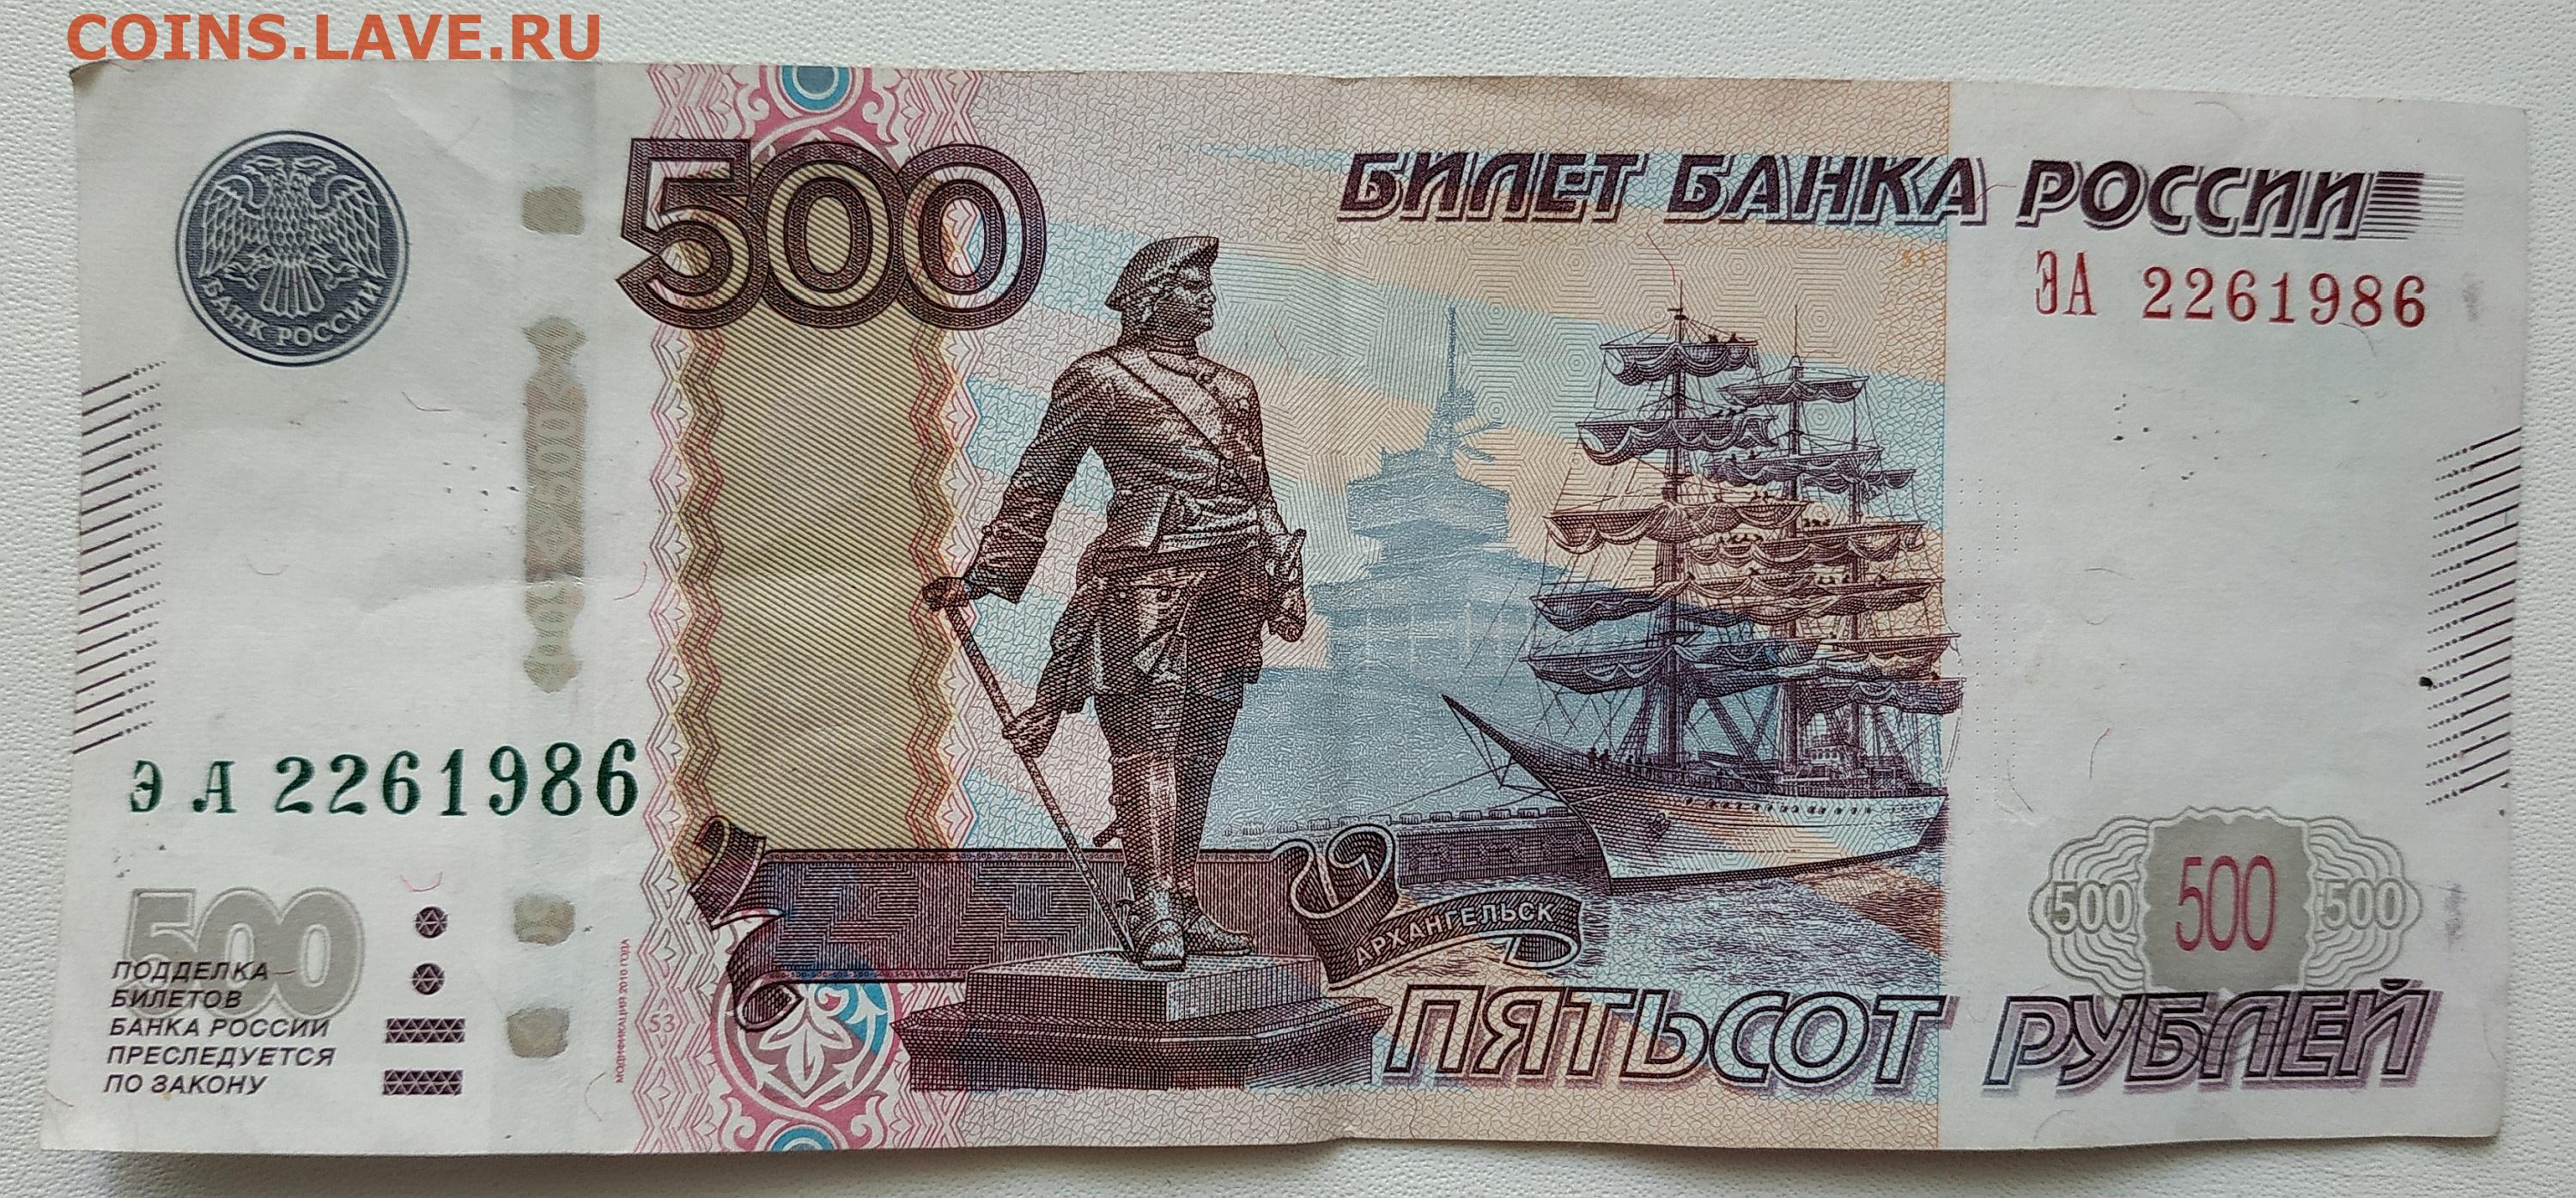 36 500 рублей. Купюра 500 рублей. 500 Рублей. 500 Рублей 1997 модификация 2010. 500 Рублей купюра для печати.